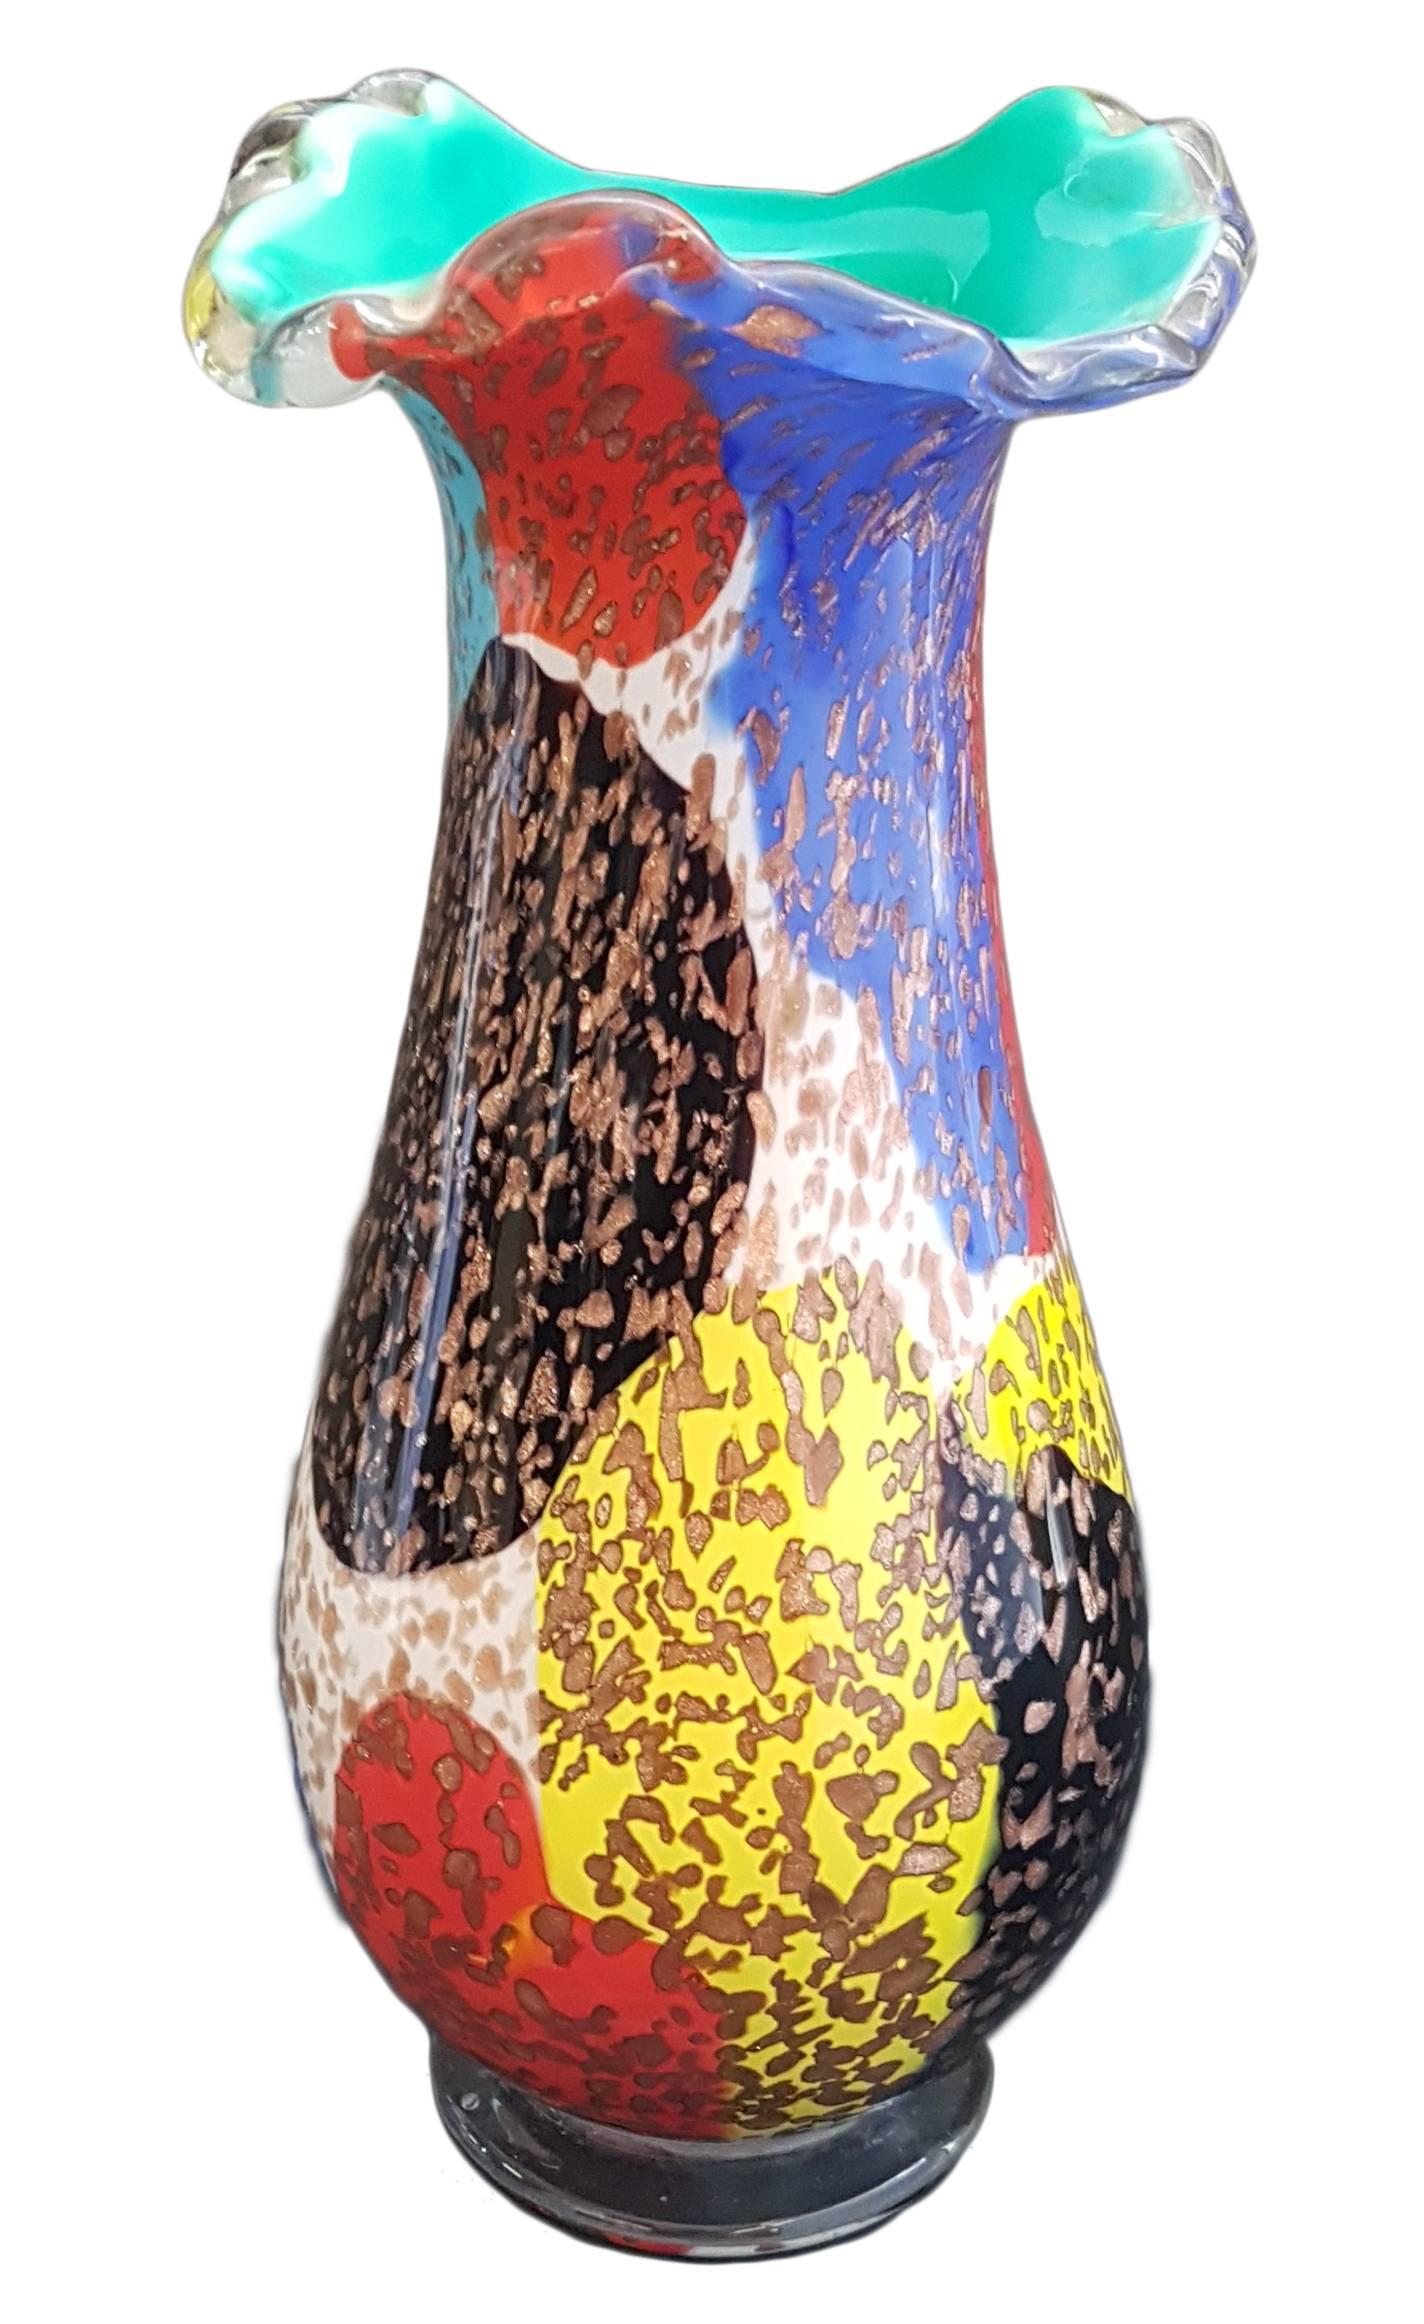 Un vase coloré en verre soufflé avec de la pierre aventurine par A.Ve.M (Arte Vetraria Muranese), Italie. 
L'aventurine est une variété de quartz caractérisée par des inclusions brillantes de mica ou d'autres minéraux qui donnent un effet chatoyant